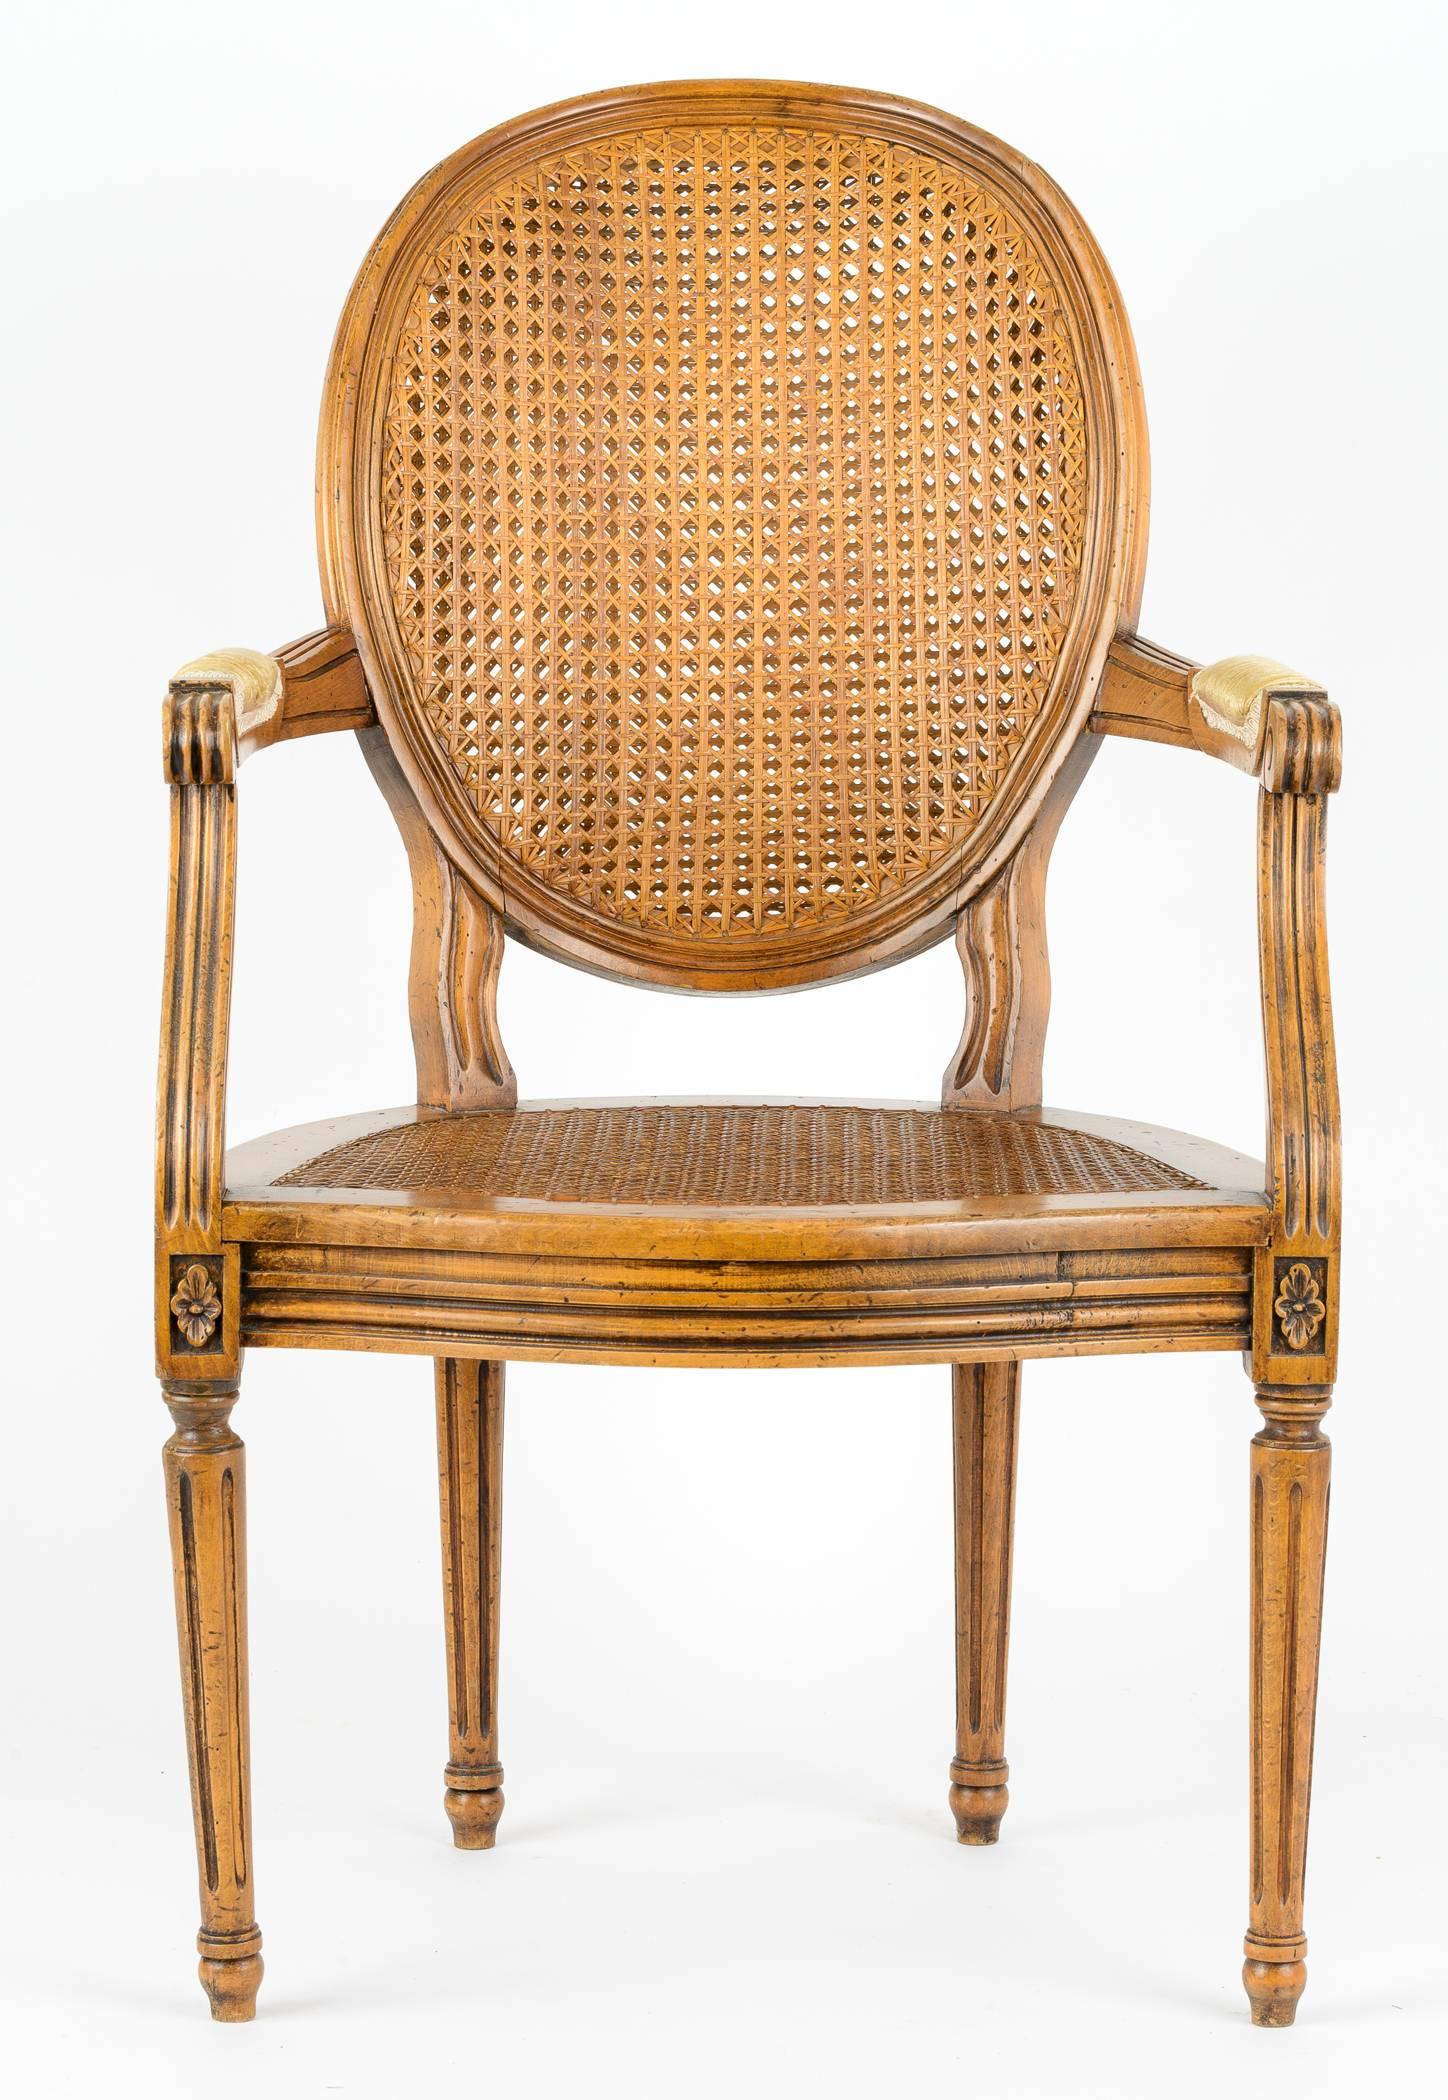 Außergewöhnlicher Louis VI-Sessel mit ovaler Rückenlehne aus Doppelrohr. Kanaldetails an Armen, Rock und Beinen. Die Arme sind sanft geschwungen und gehen in das Bein über, das am Rockteil mit einer Rosette verziert ist. Die oval geschwungene